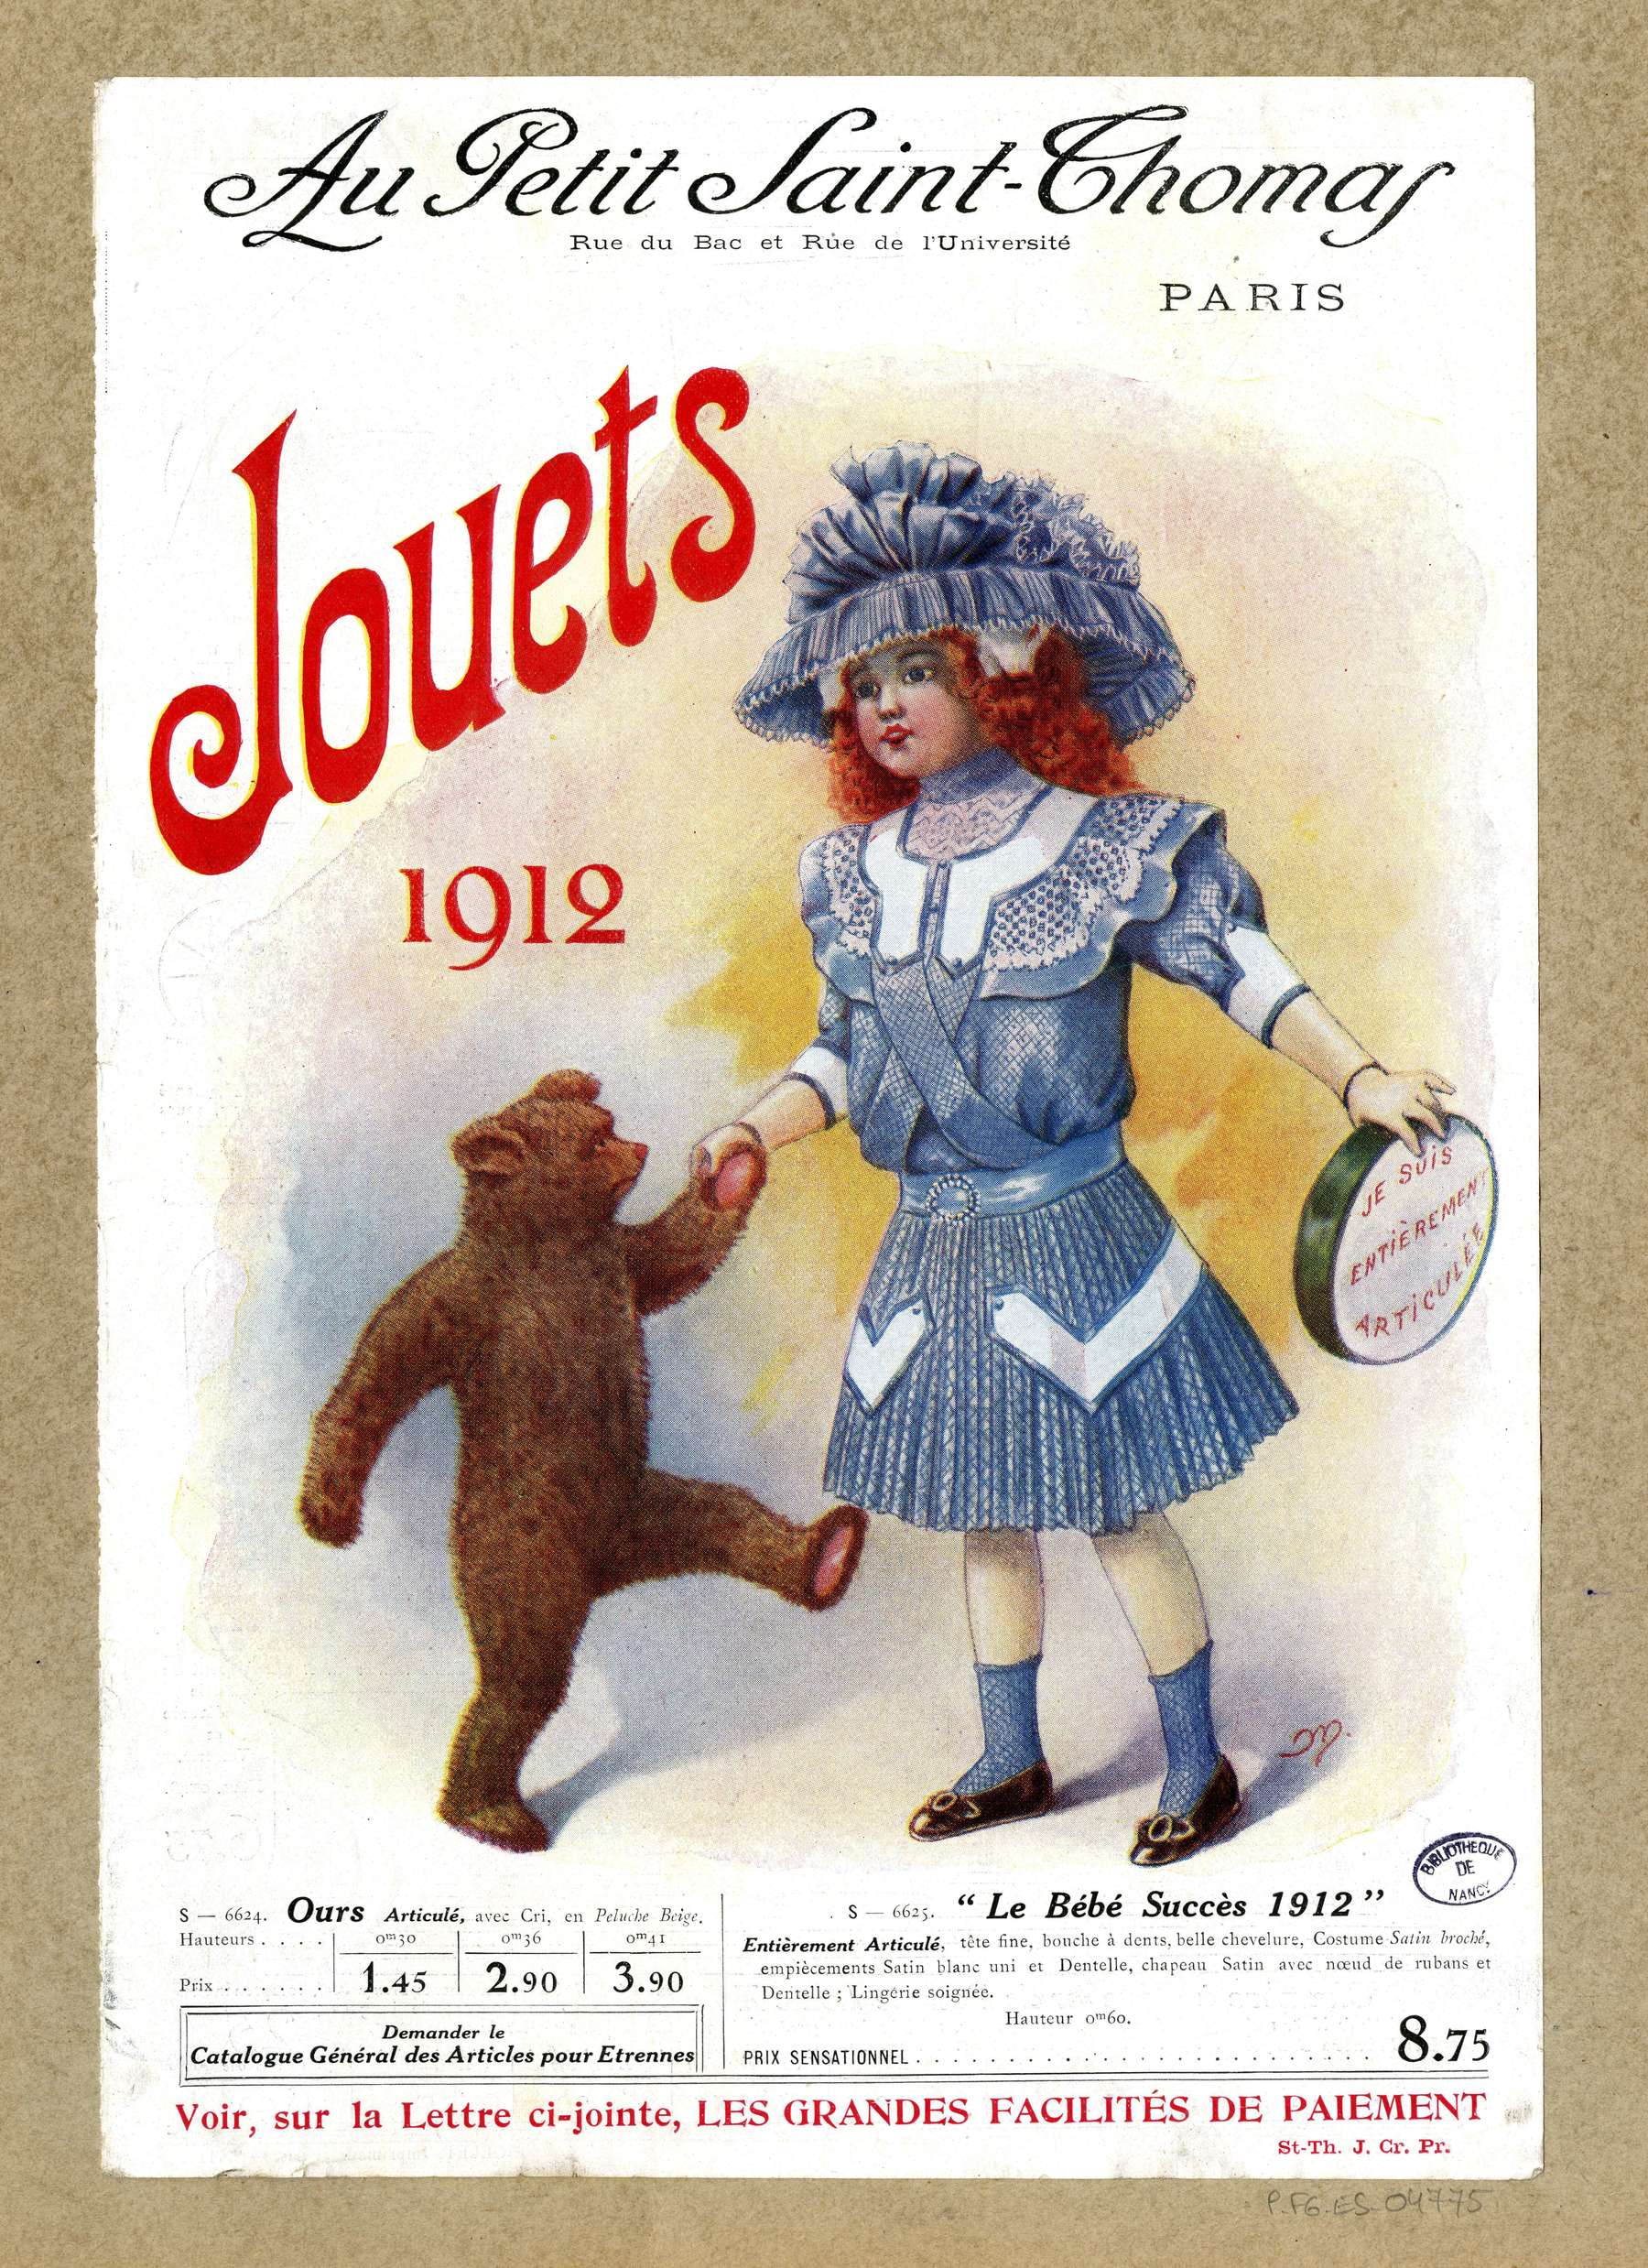 Contenu du "Le Bébé Succès 1912"